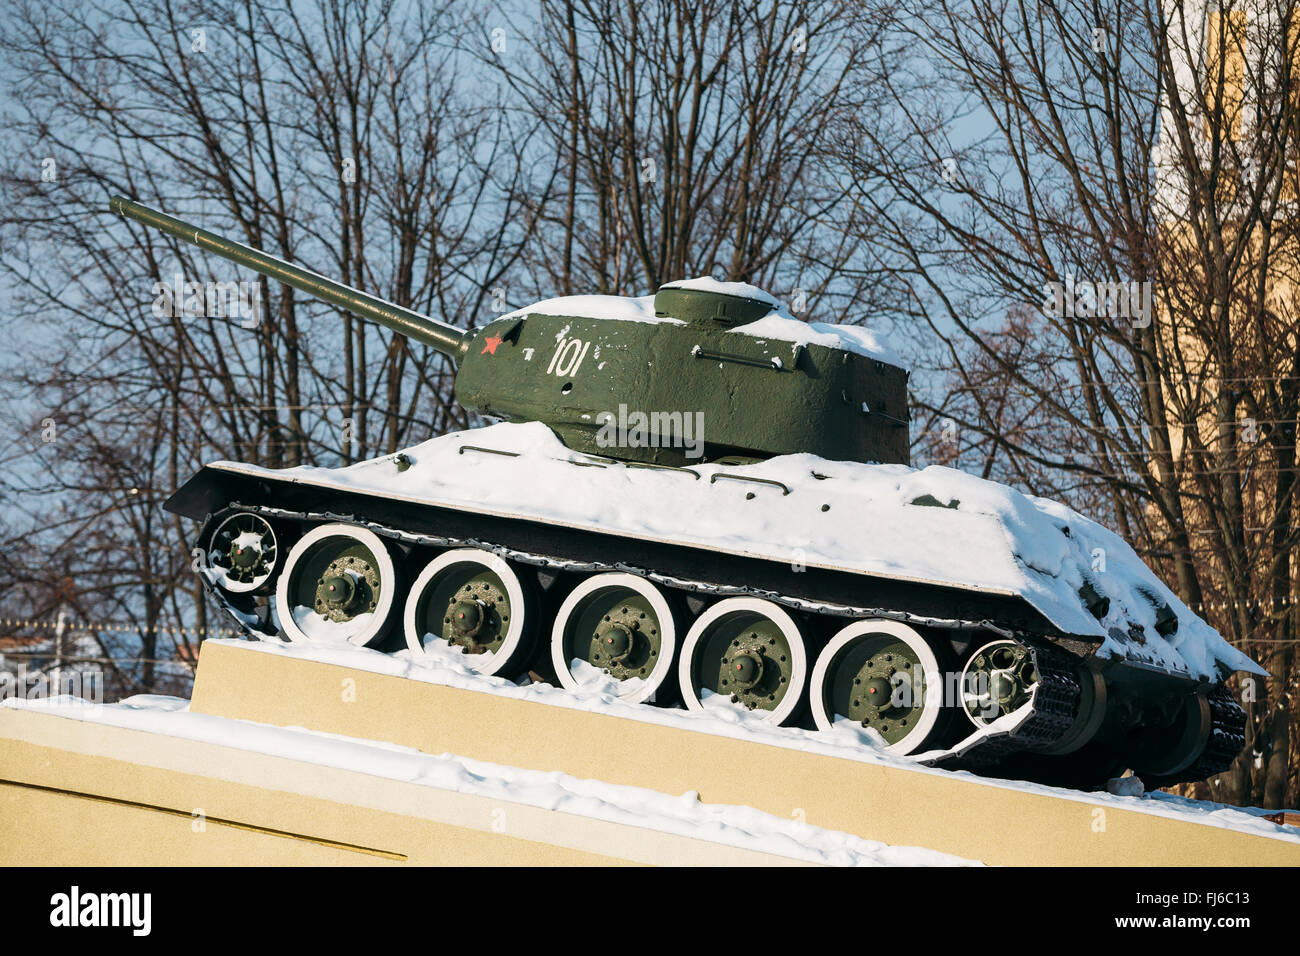 Gomel, Bielorussia - 23 Gennaio 2016: il vecchio carro armato sovietico T-34 come il monumento al soldato sovietico liberato Gomel. Bielorussia Foto Stock